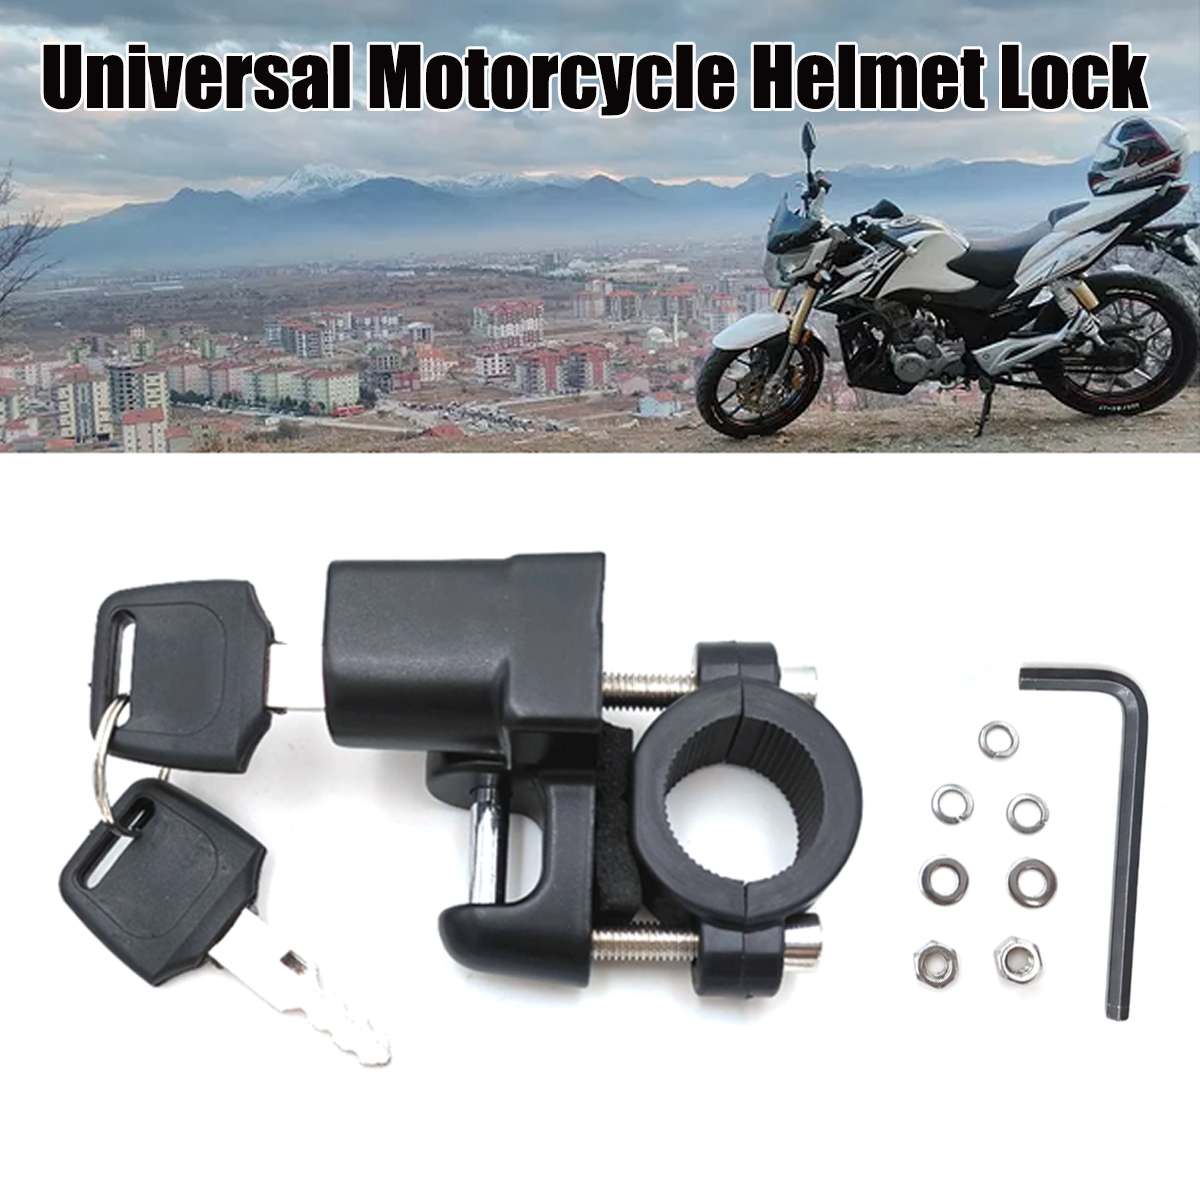 Motorhelm Lock Motor Fiets Helm Lock Auto-Styling Opknoping Haak Helm Universal Veiligheidsslot Haak Met 2 Sleutels